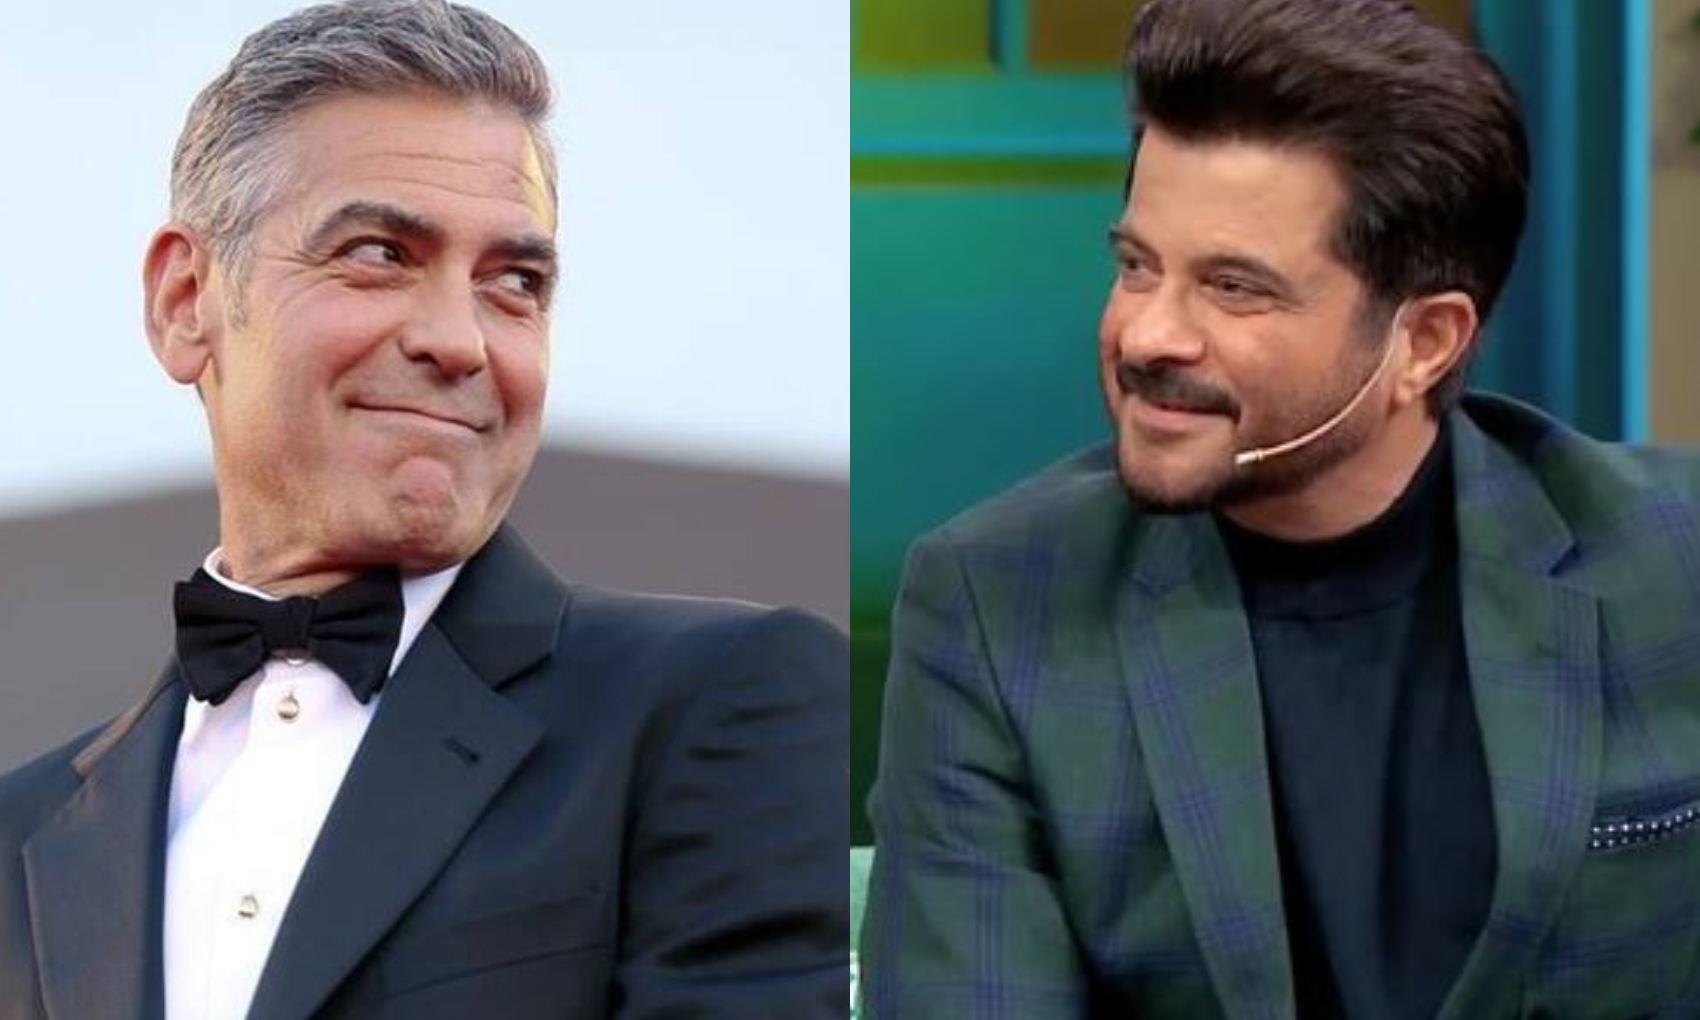 George Clooney: जॉर्ज क्लूनी ने एक झटके में ठुकरा दिया था 284 करोड़ का ऑफर, अनिल कपूर संग बातचीत किया खुलासा